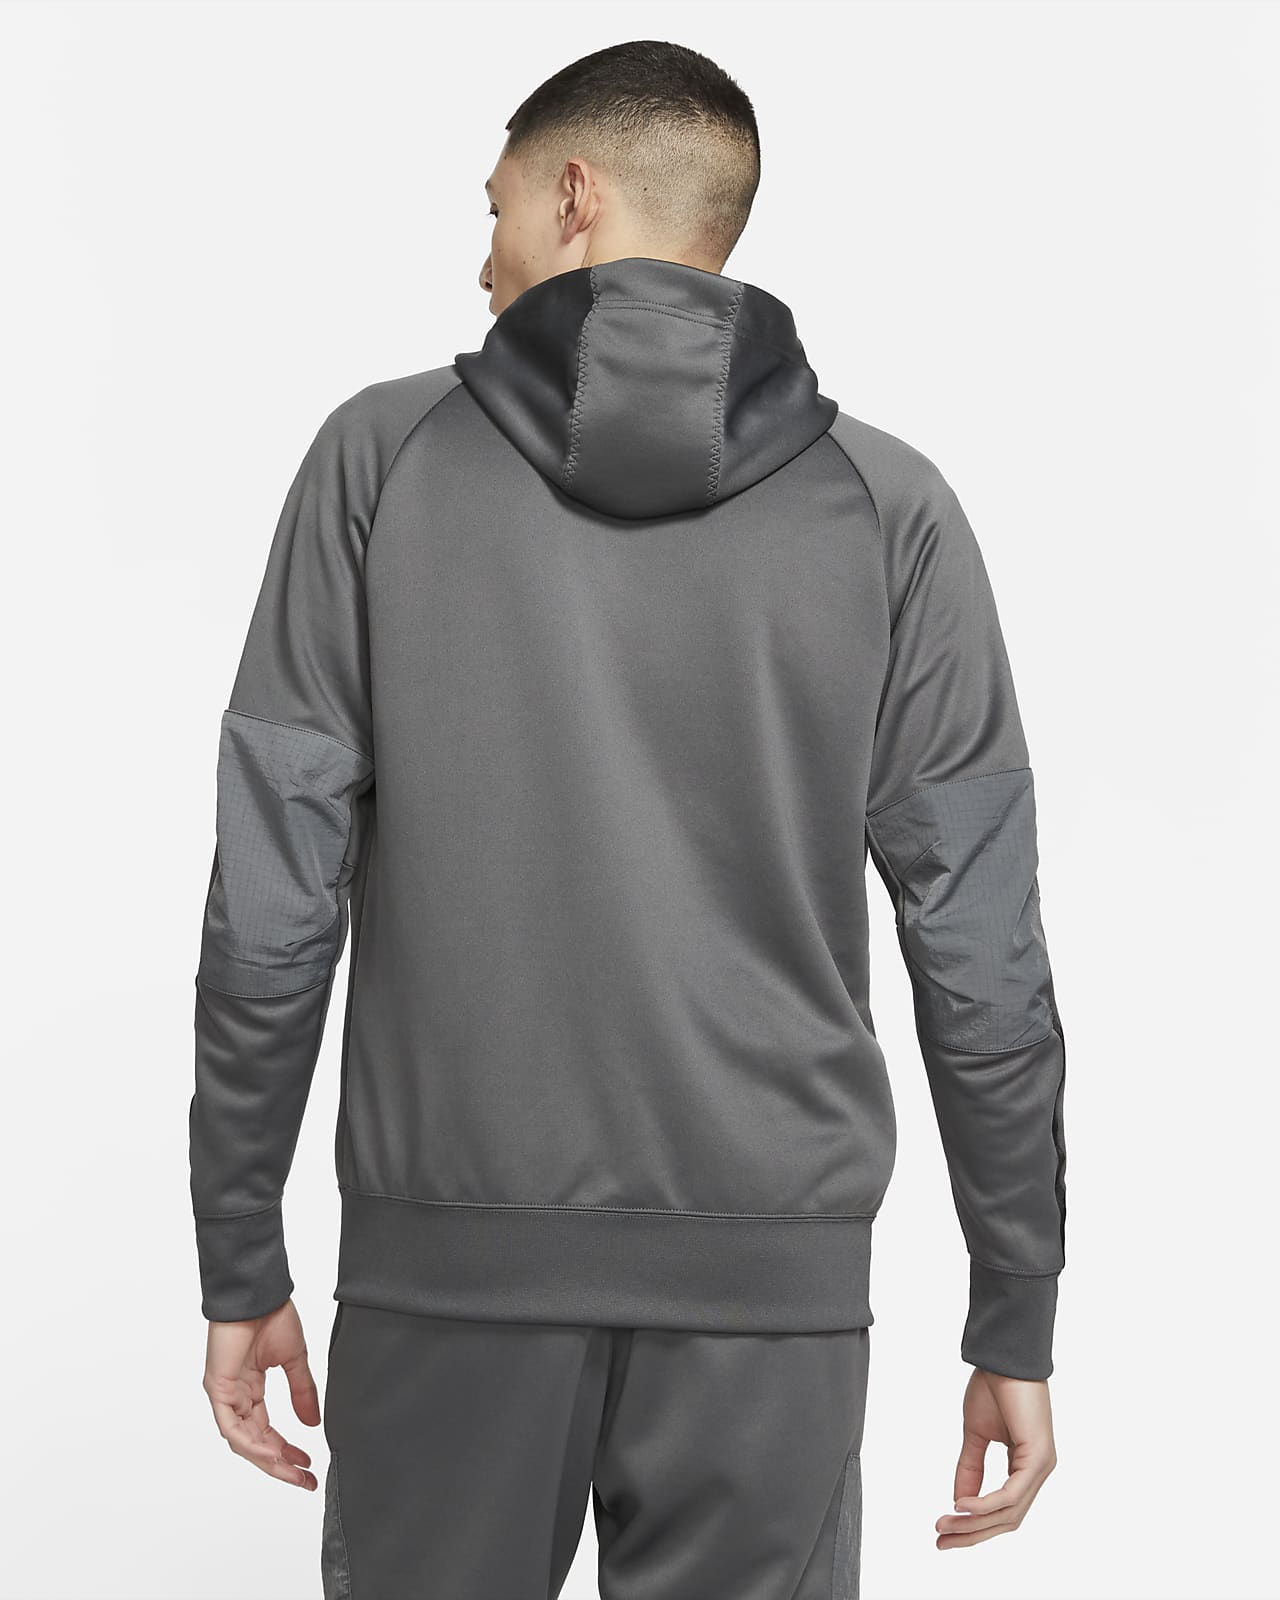 grey nike air max hoodie